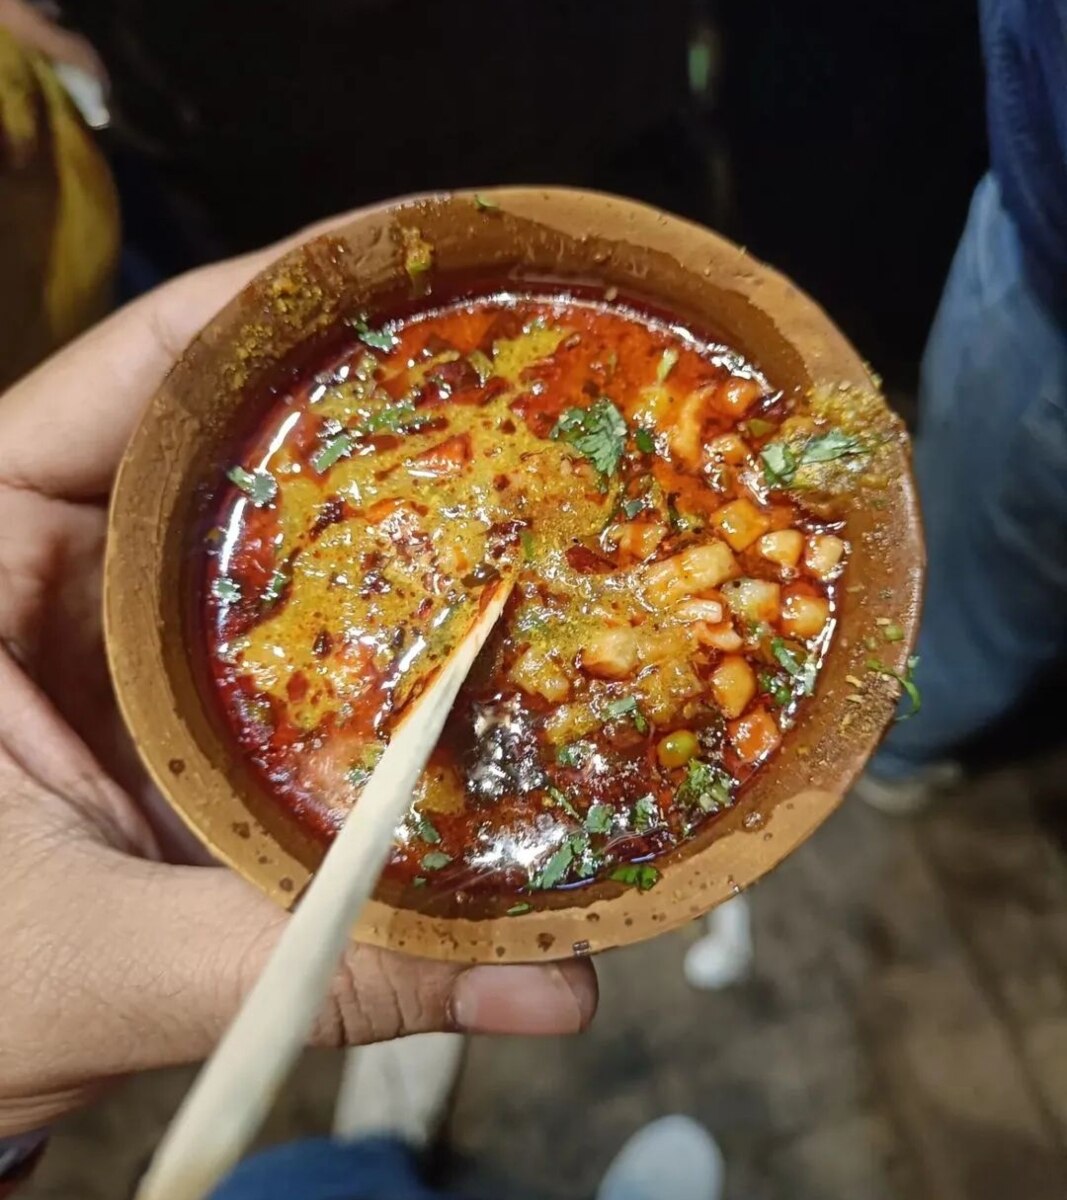 Banarasi Food:  जब भी जाना बनारस ये खाए बिना मत आना... क्योंकि ये टेस्ट कहीं भी नहीं मिलेगा!